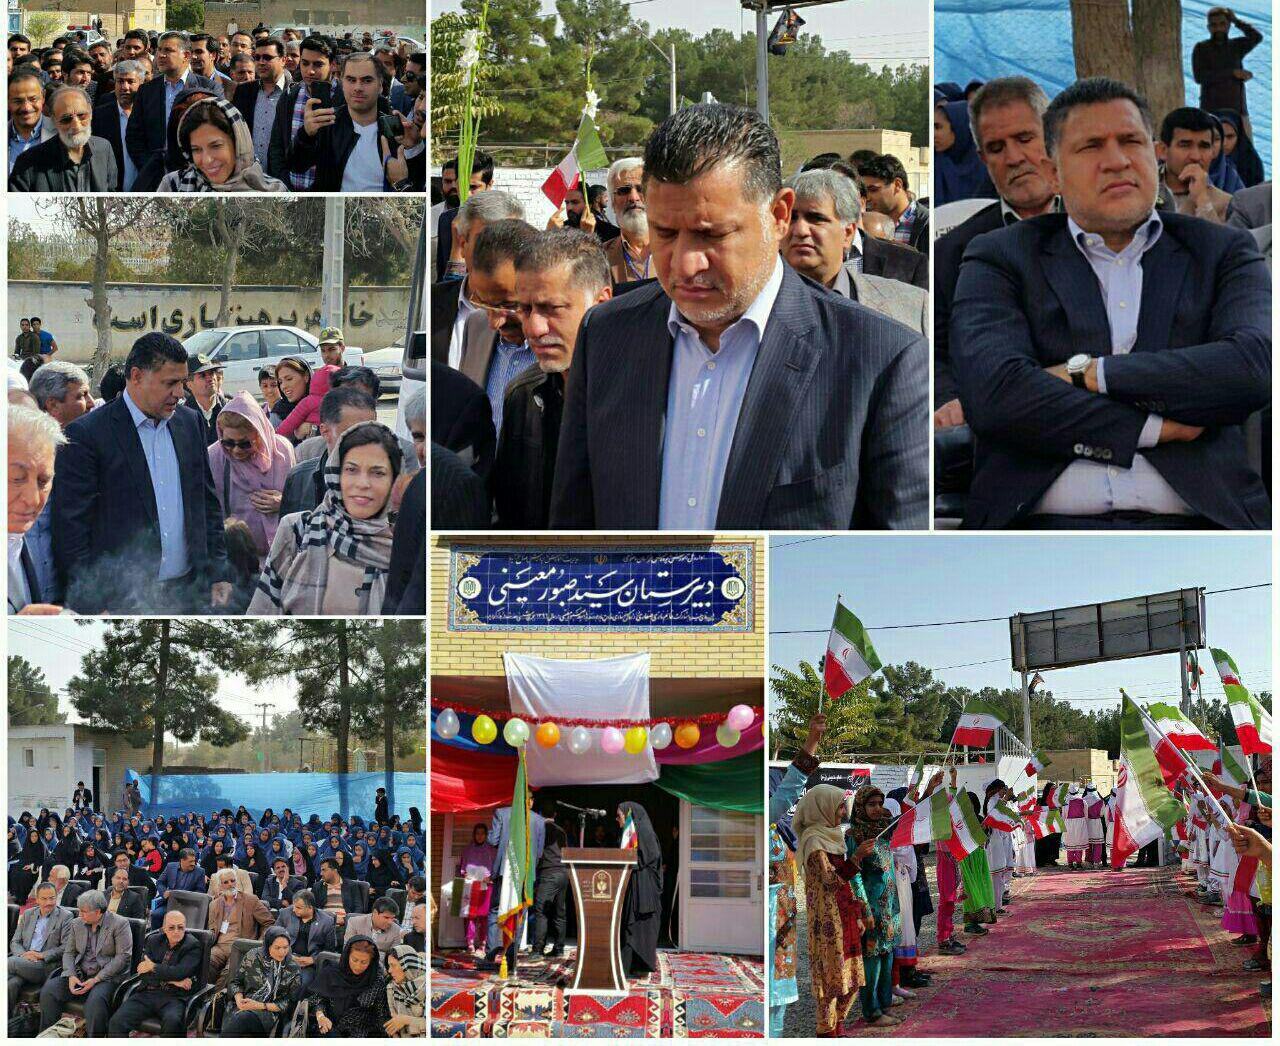 افتتاح یک واحد آموزشی خیر ساز در صالح آبادتربت جام با حضور علی دایی